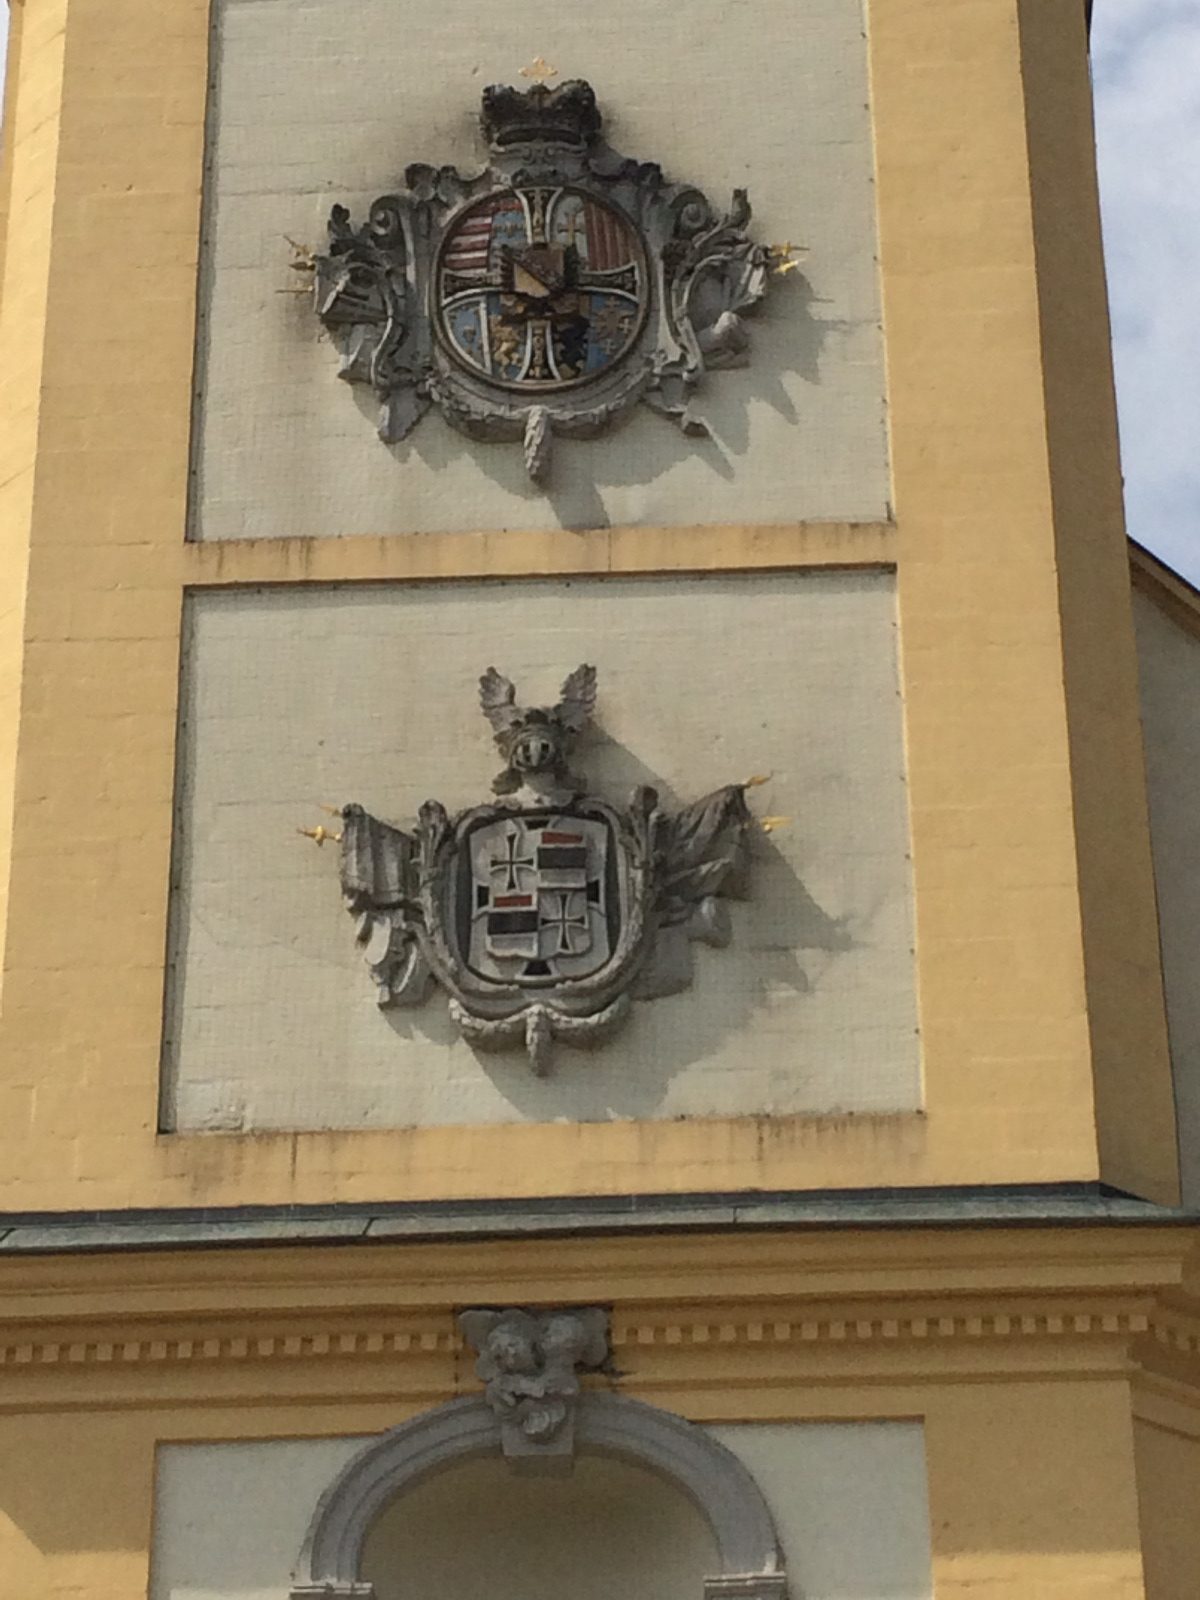 Auf dem Bild sieht man untereinander zwei Wappen, die sich auf der St. Augustinus Kirche in Stopfenheim befinden.